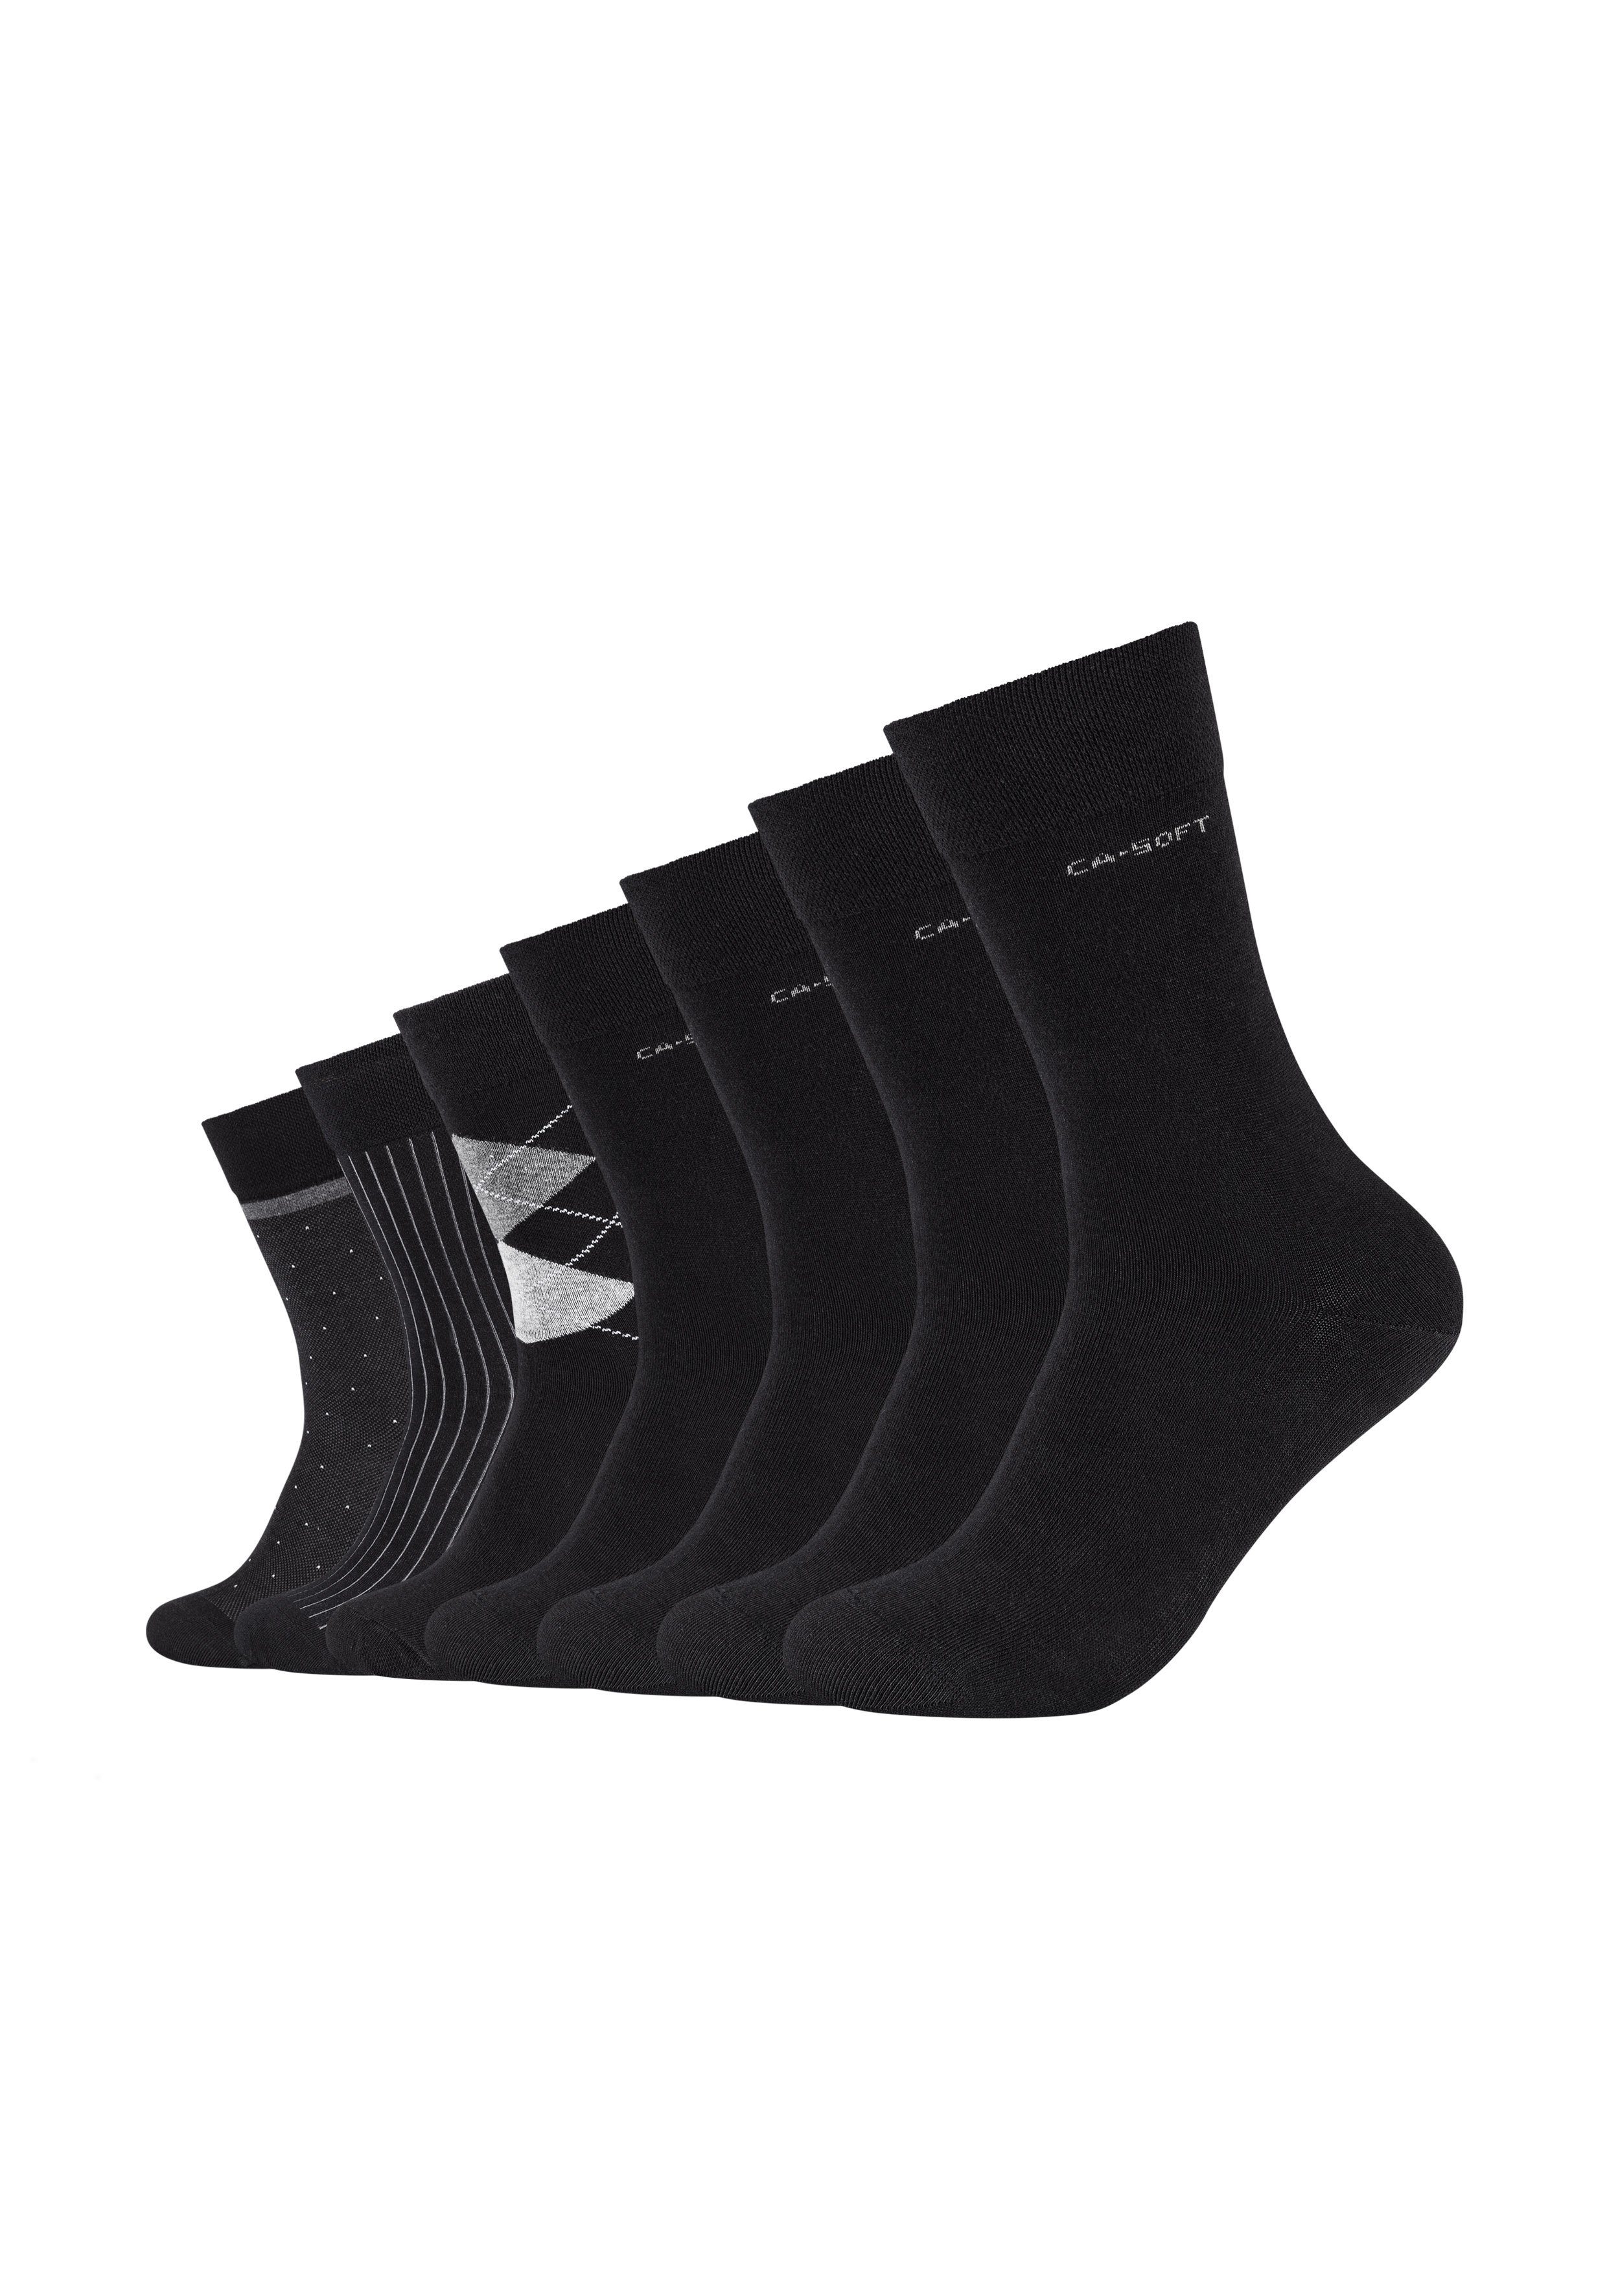 Camano mit schwarz ca-soft Komfortbund Socken (7-Paar) weichem